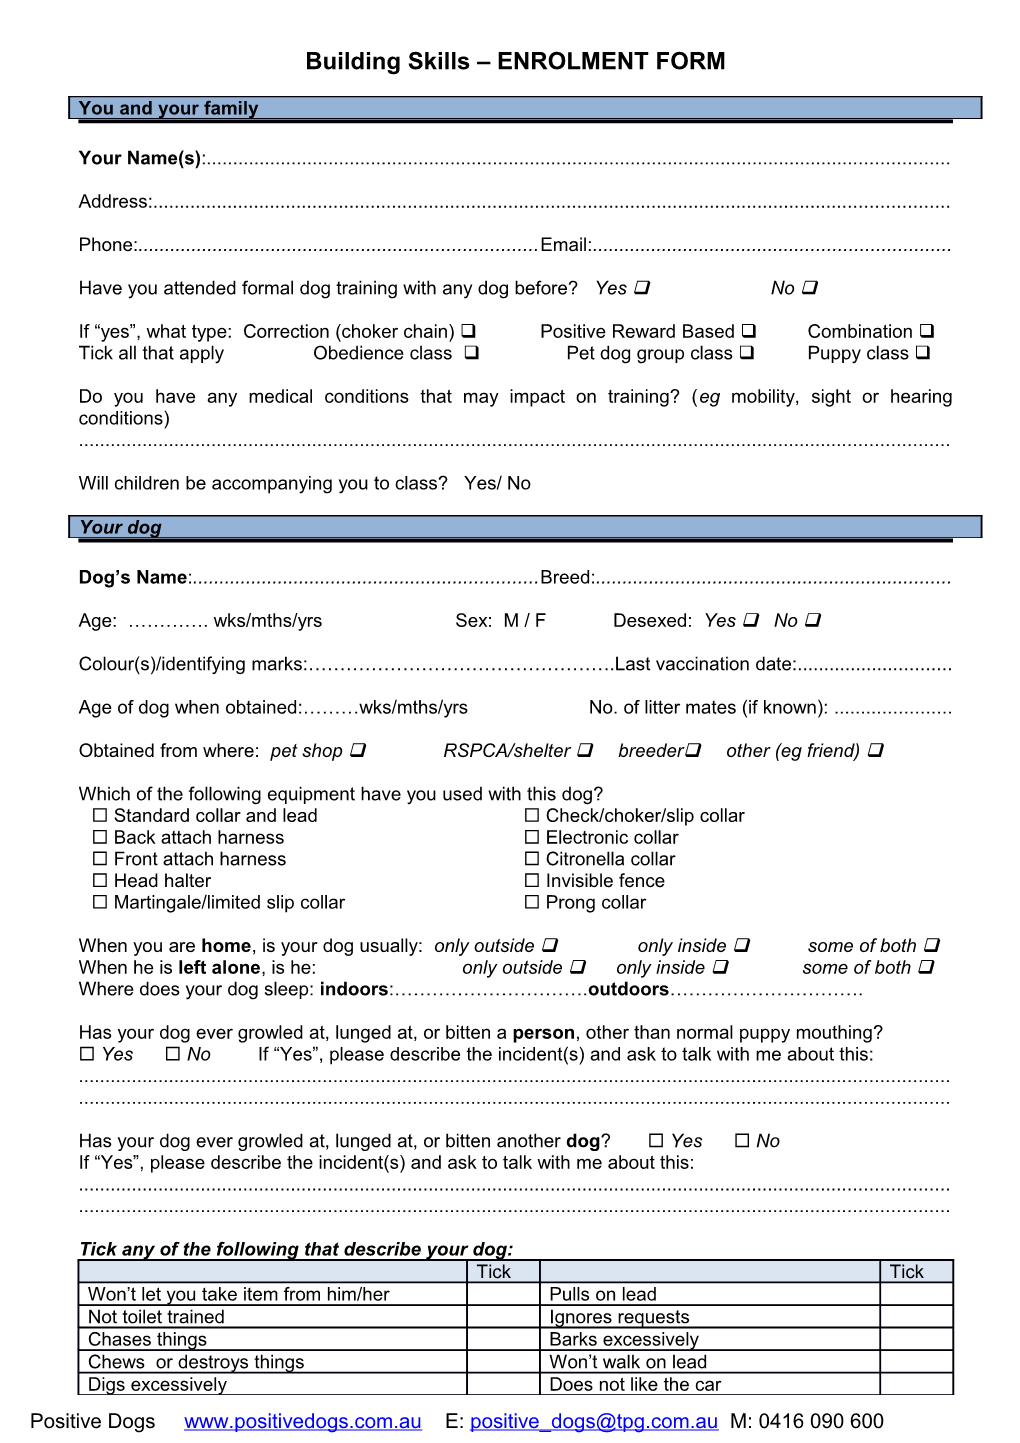 Client Profile Form